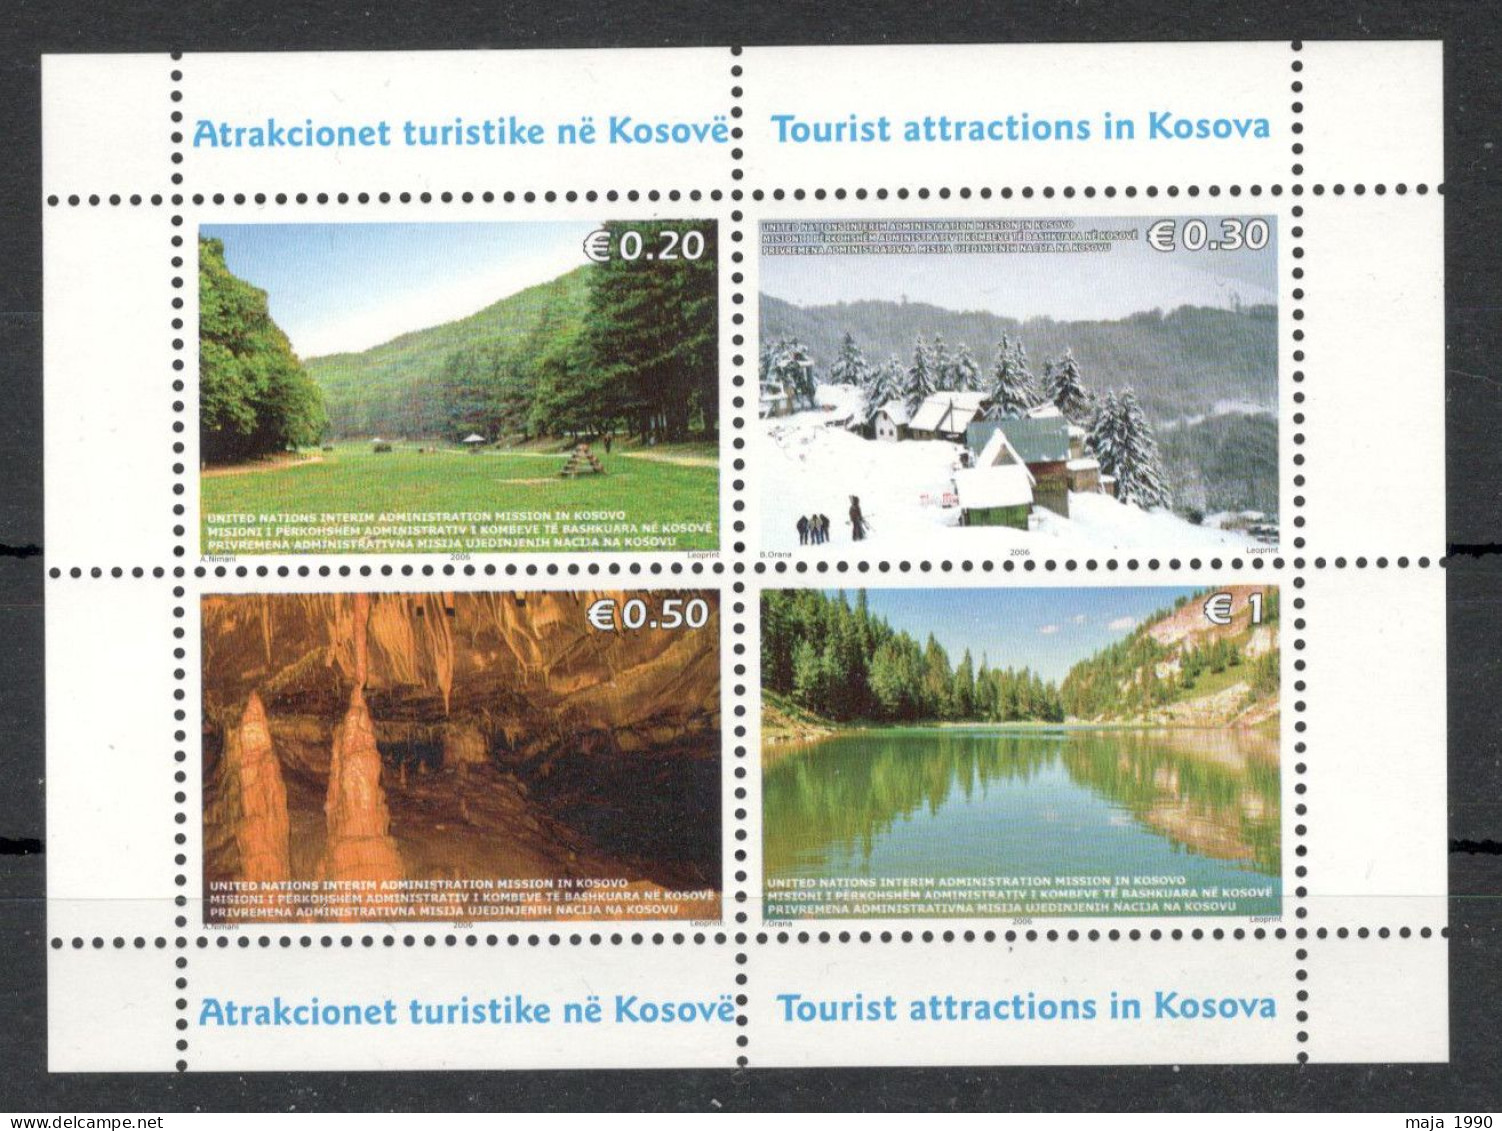 KOSOVO - MNH BLOCK - TURISM - 2006. - Kosovo